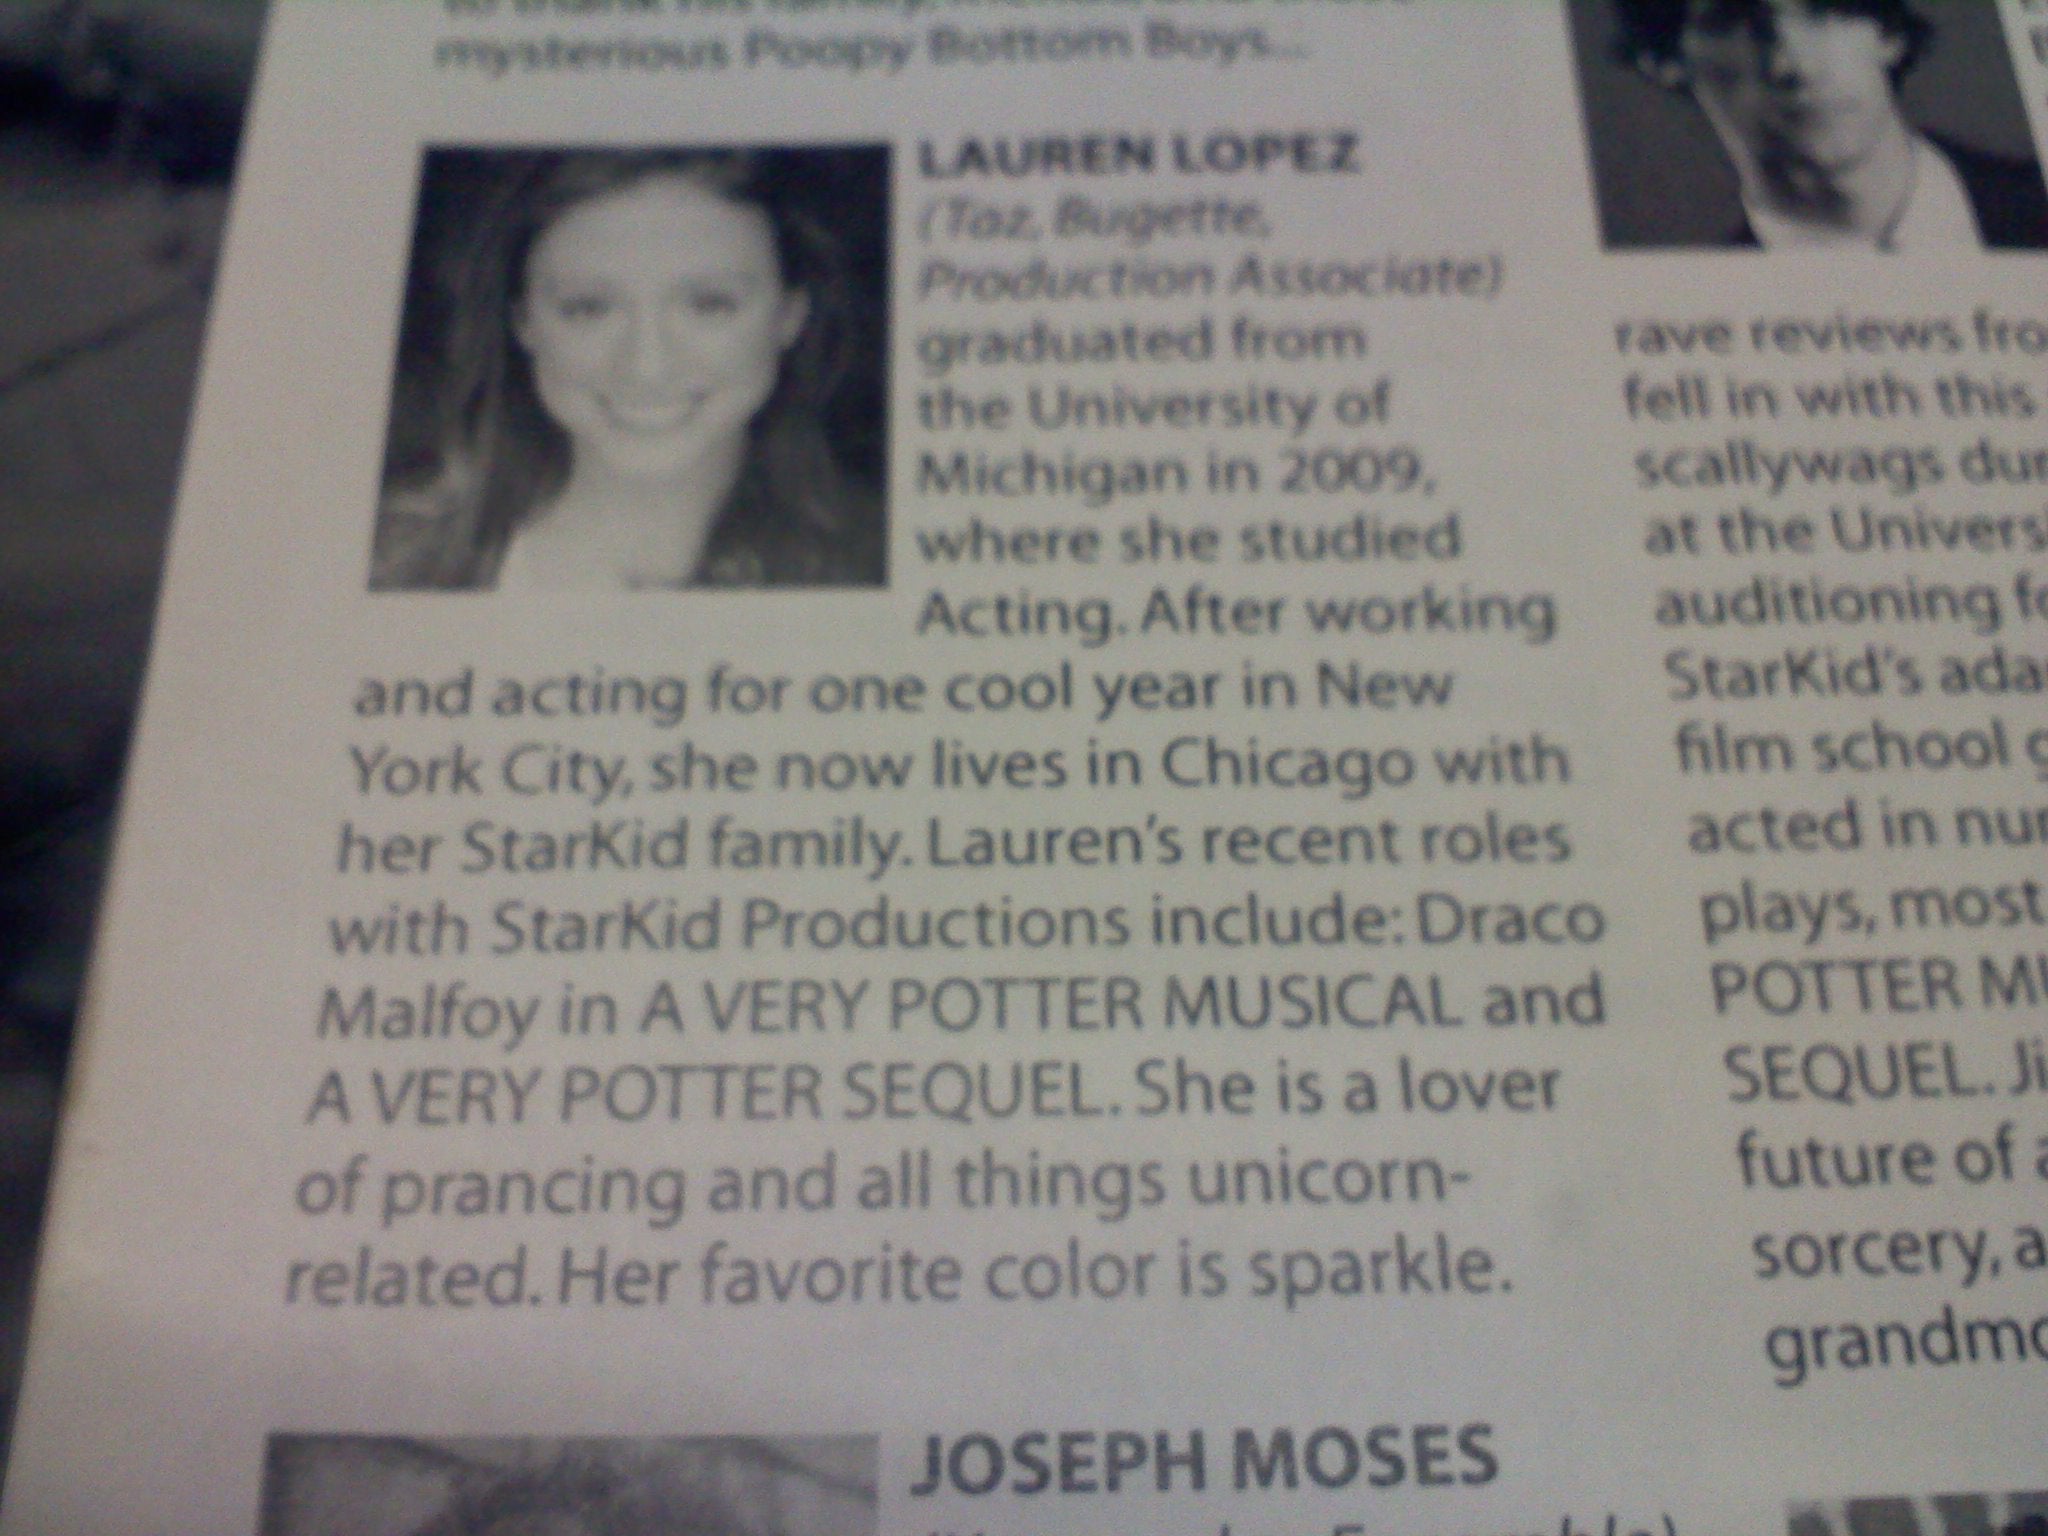 An actor profile of Lauren Lopez